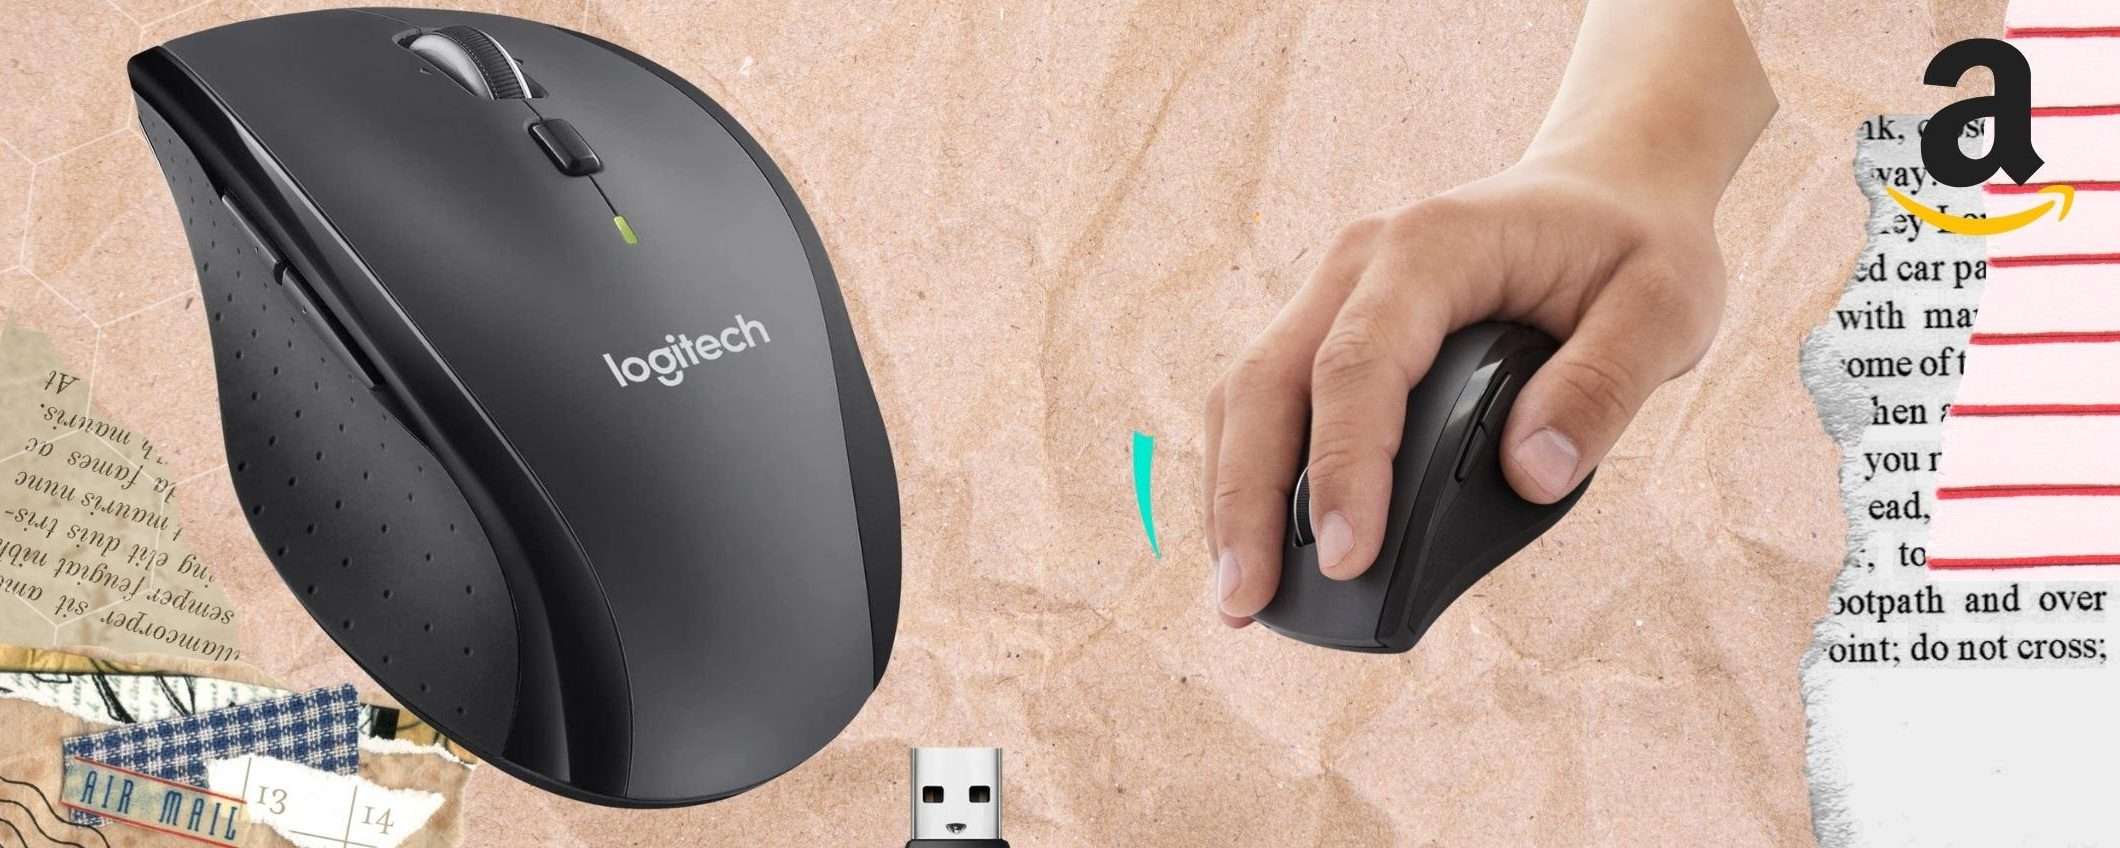 Mouse wireless: BOMBA Logitech a metà prezzo ORA